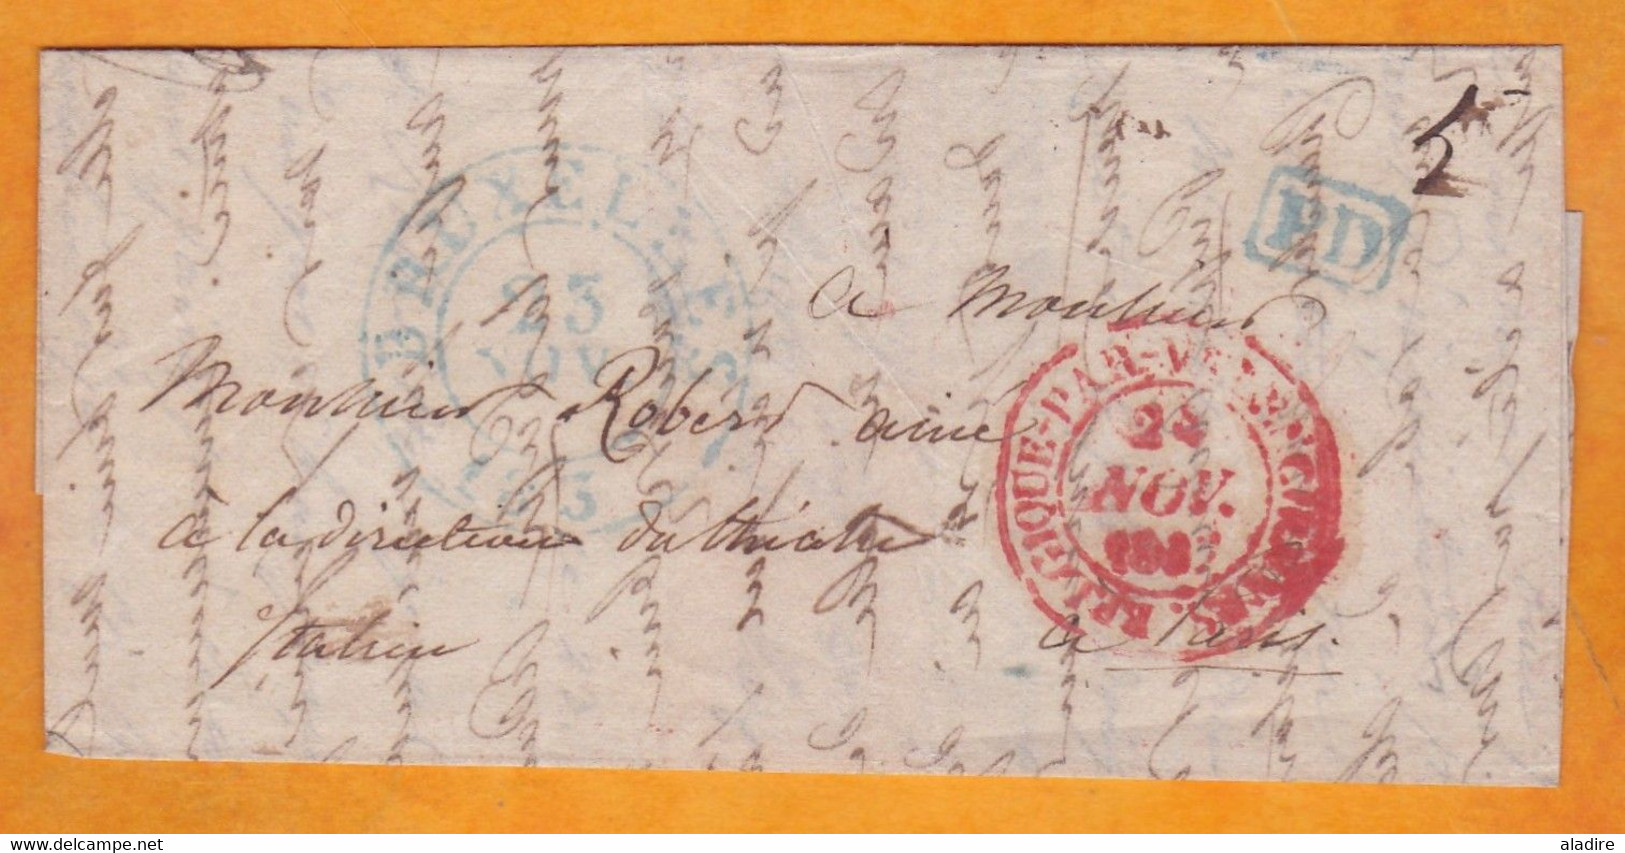 1837 - Lettre Pliée Personnelle En Français De BRUXELLES, Belgique Indépendante Vers PARIS, France - Entrée Valenciennes - 1830-1849 (Belgica Independiente)